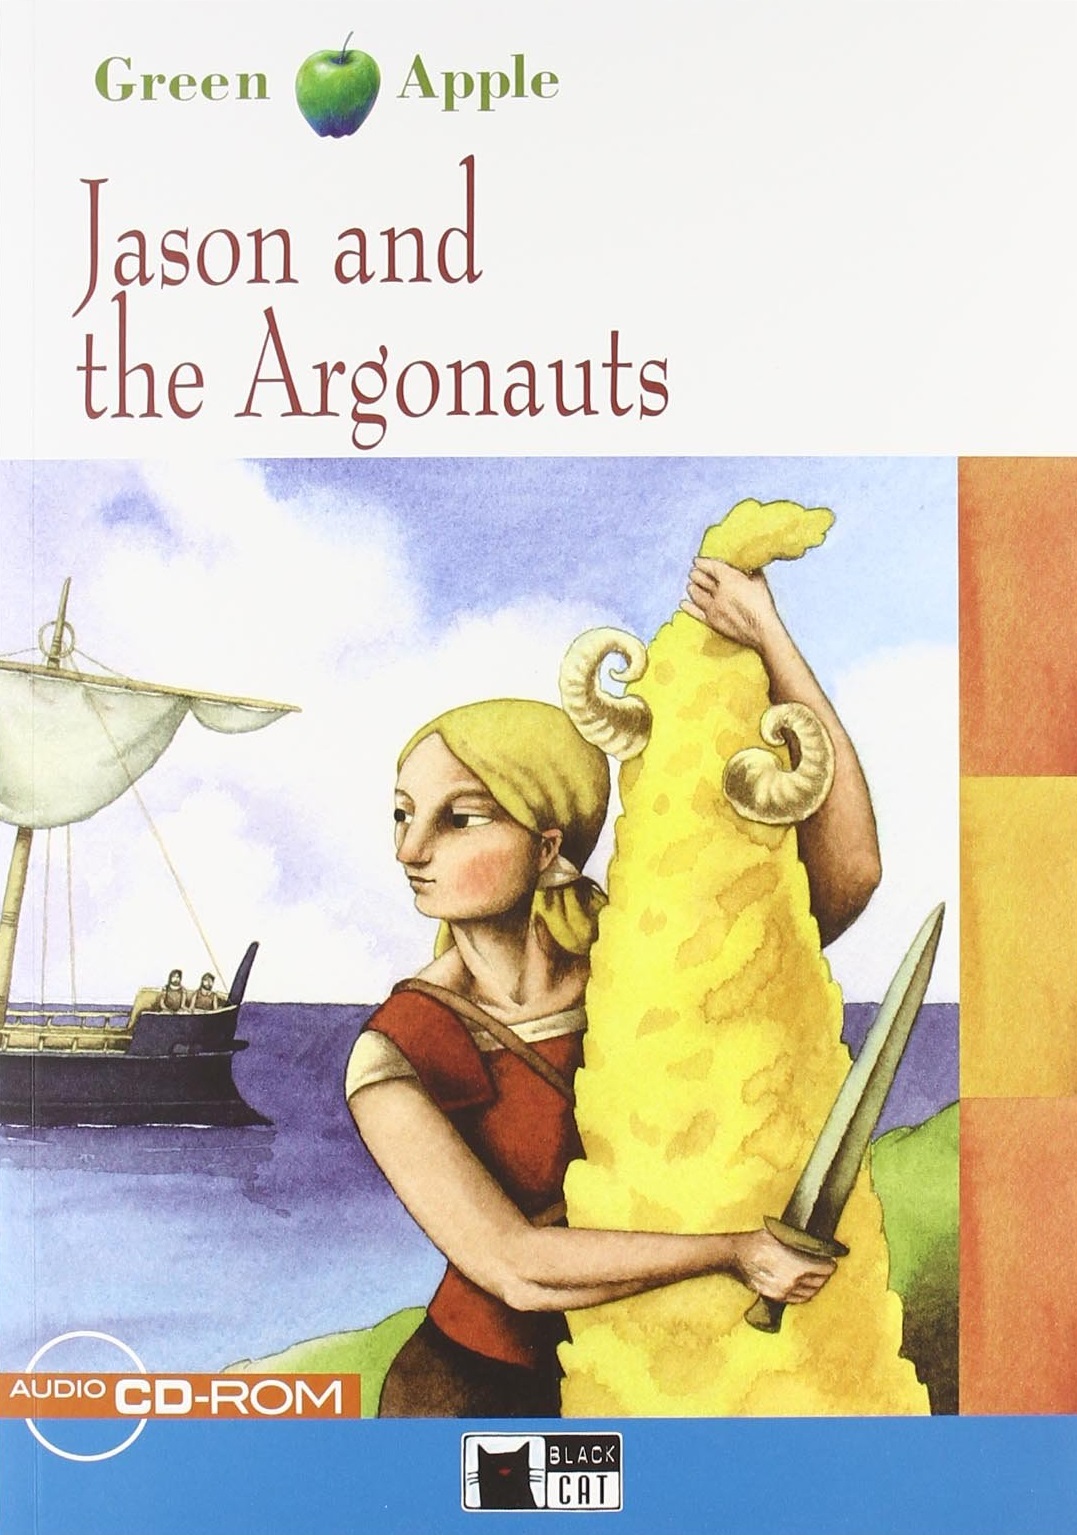 Jason and the Argonauts + Audio CD-ROM